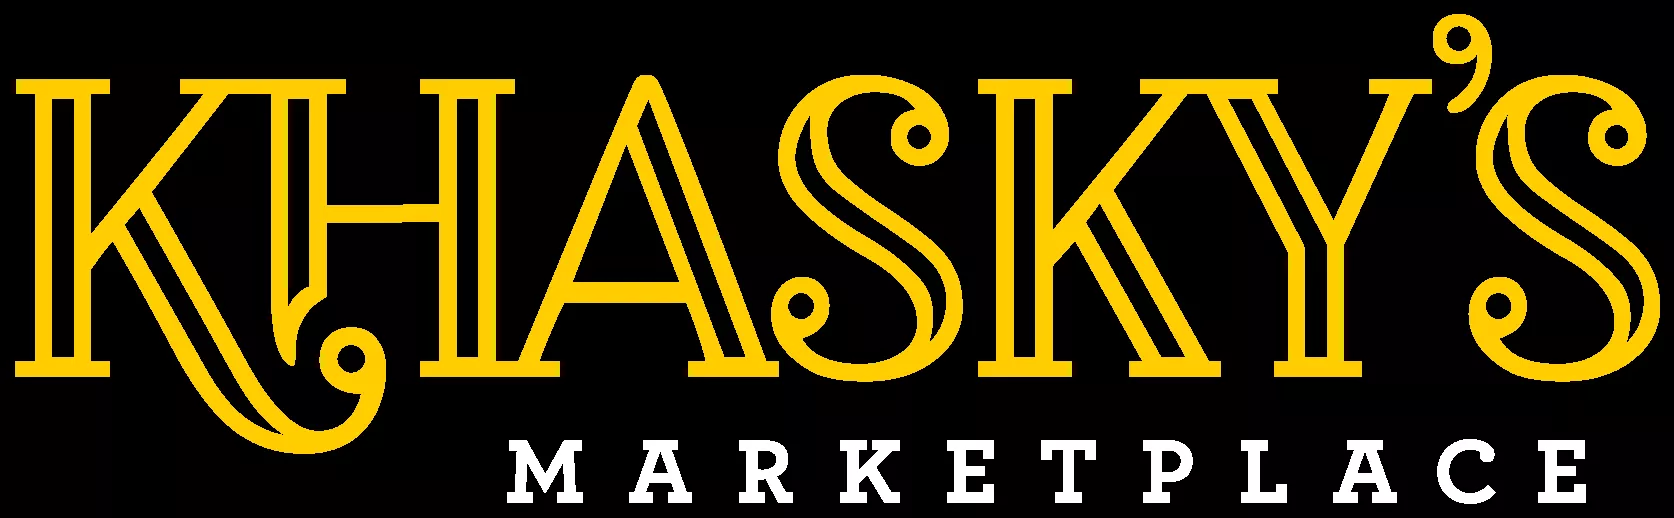 Khaskys Market